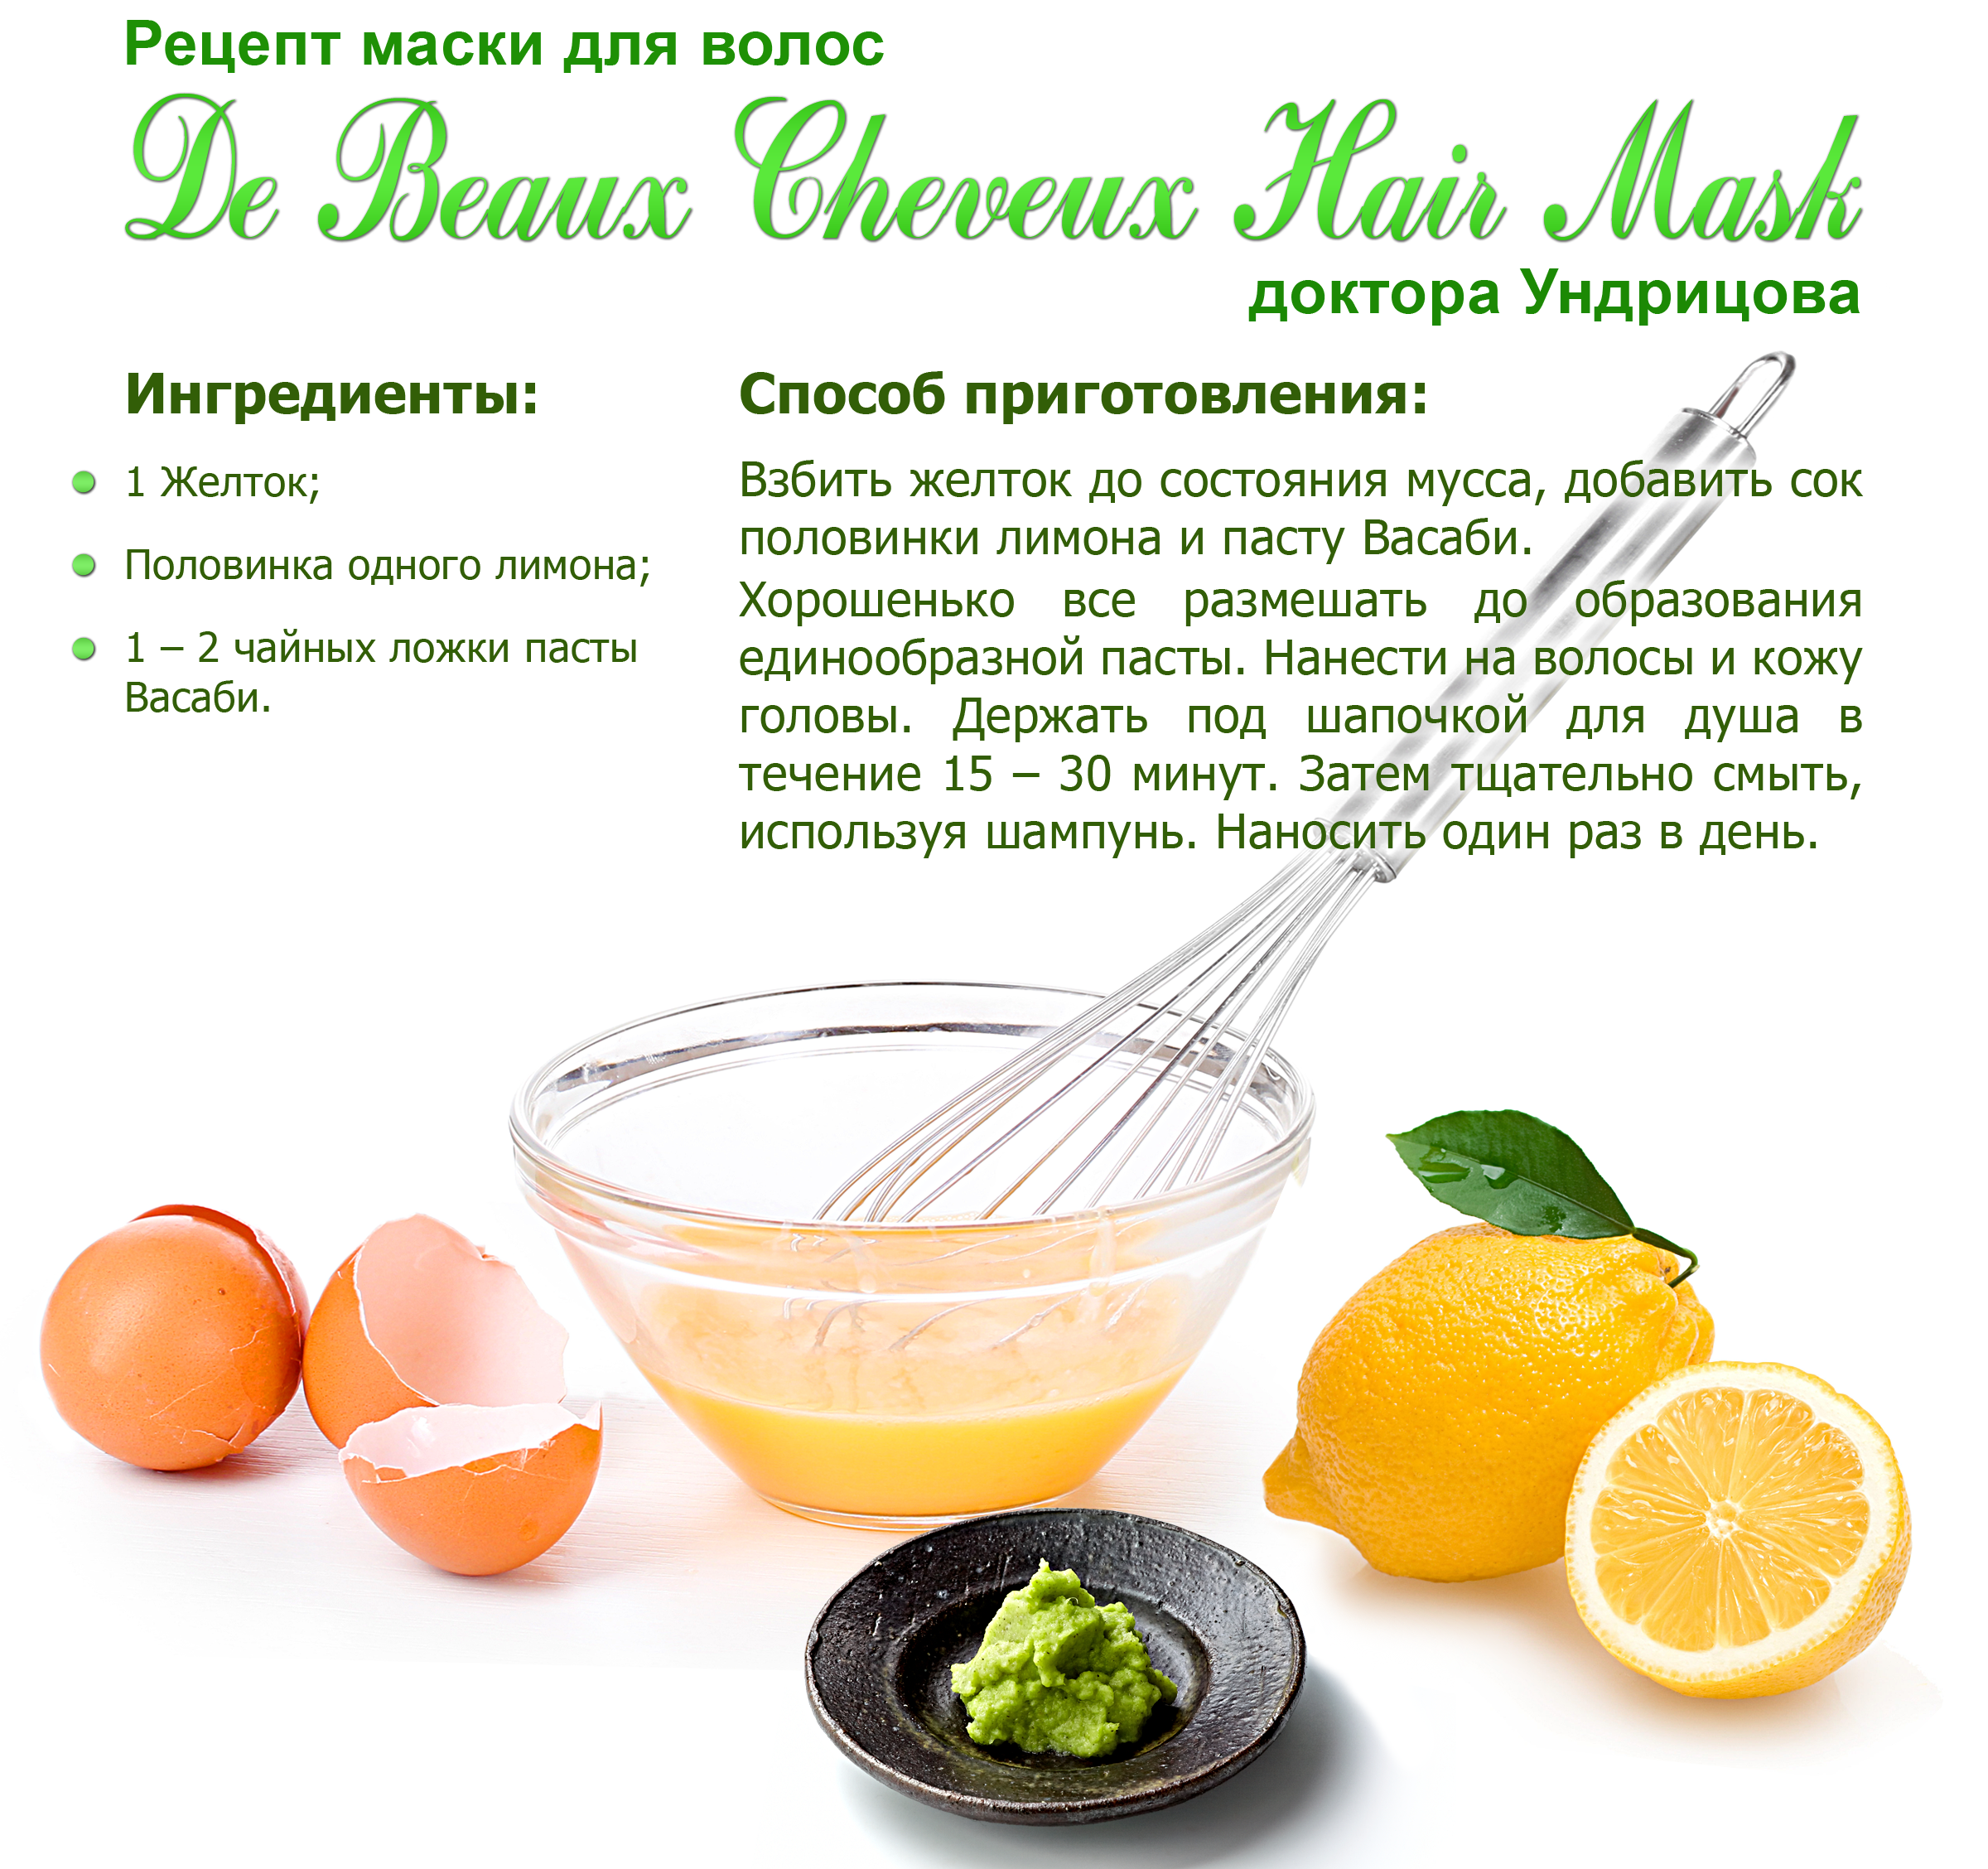 Луковая маска для волос против выпадения: польза и эффект применения, а также рецепт который можно приготовить в домашних условиях